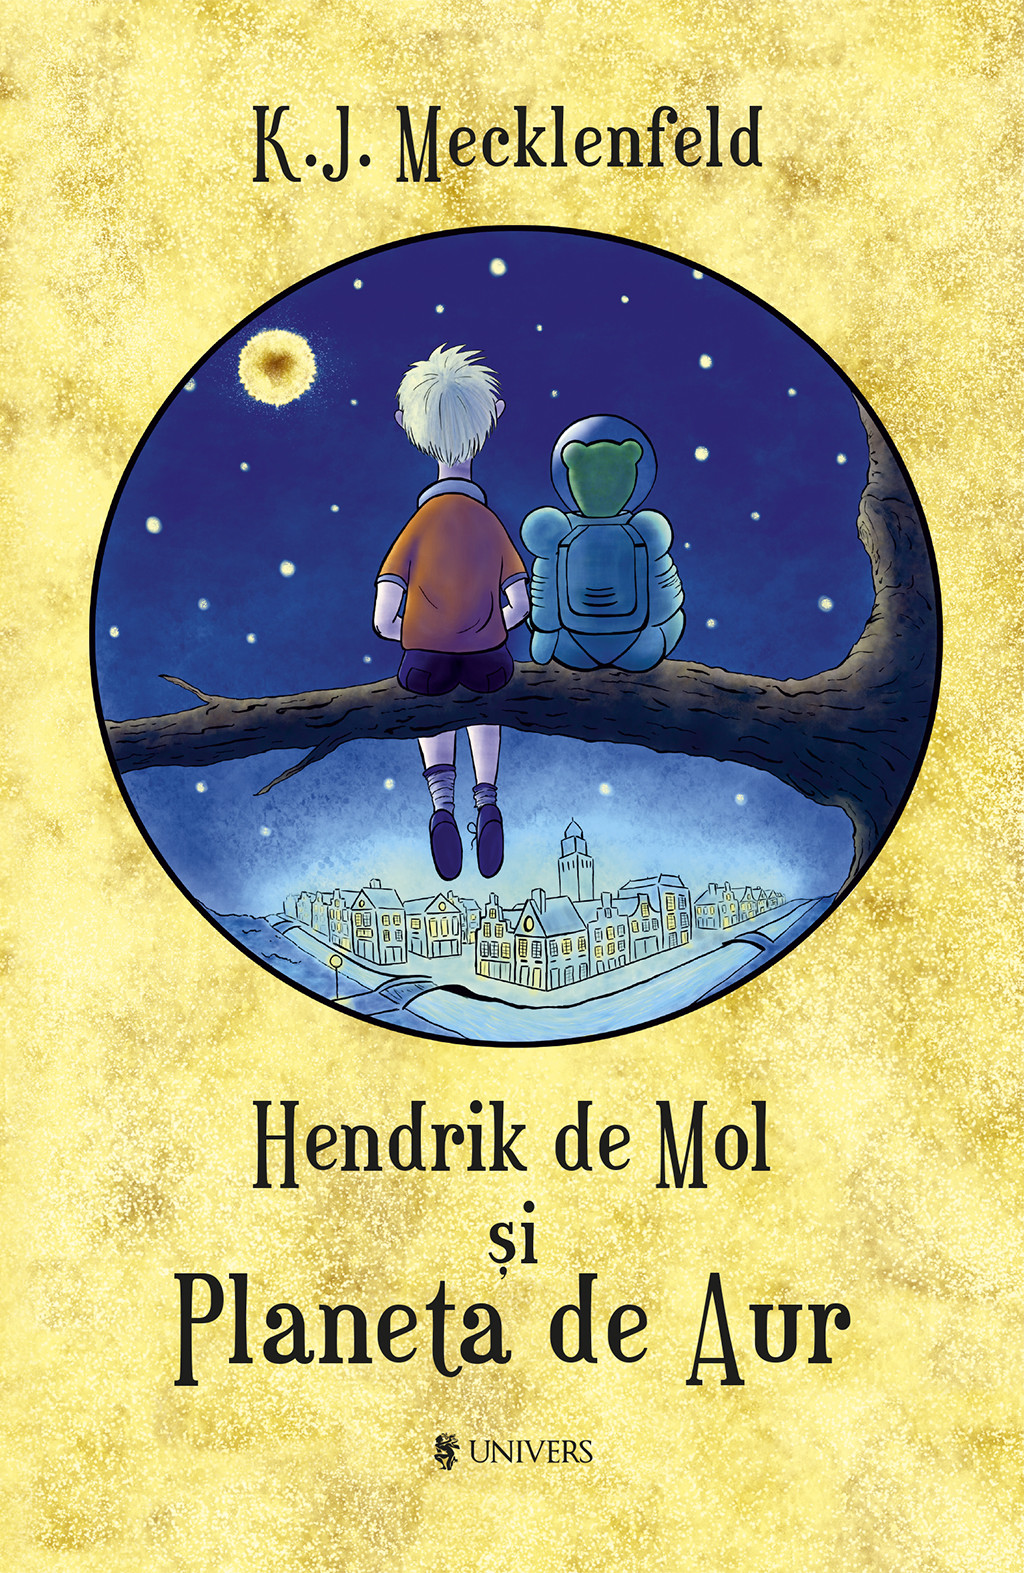 Couverture du livre Hendrik de Mol si Planeta de Aur - K.J.Mecklenfeld